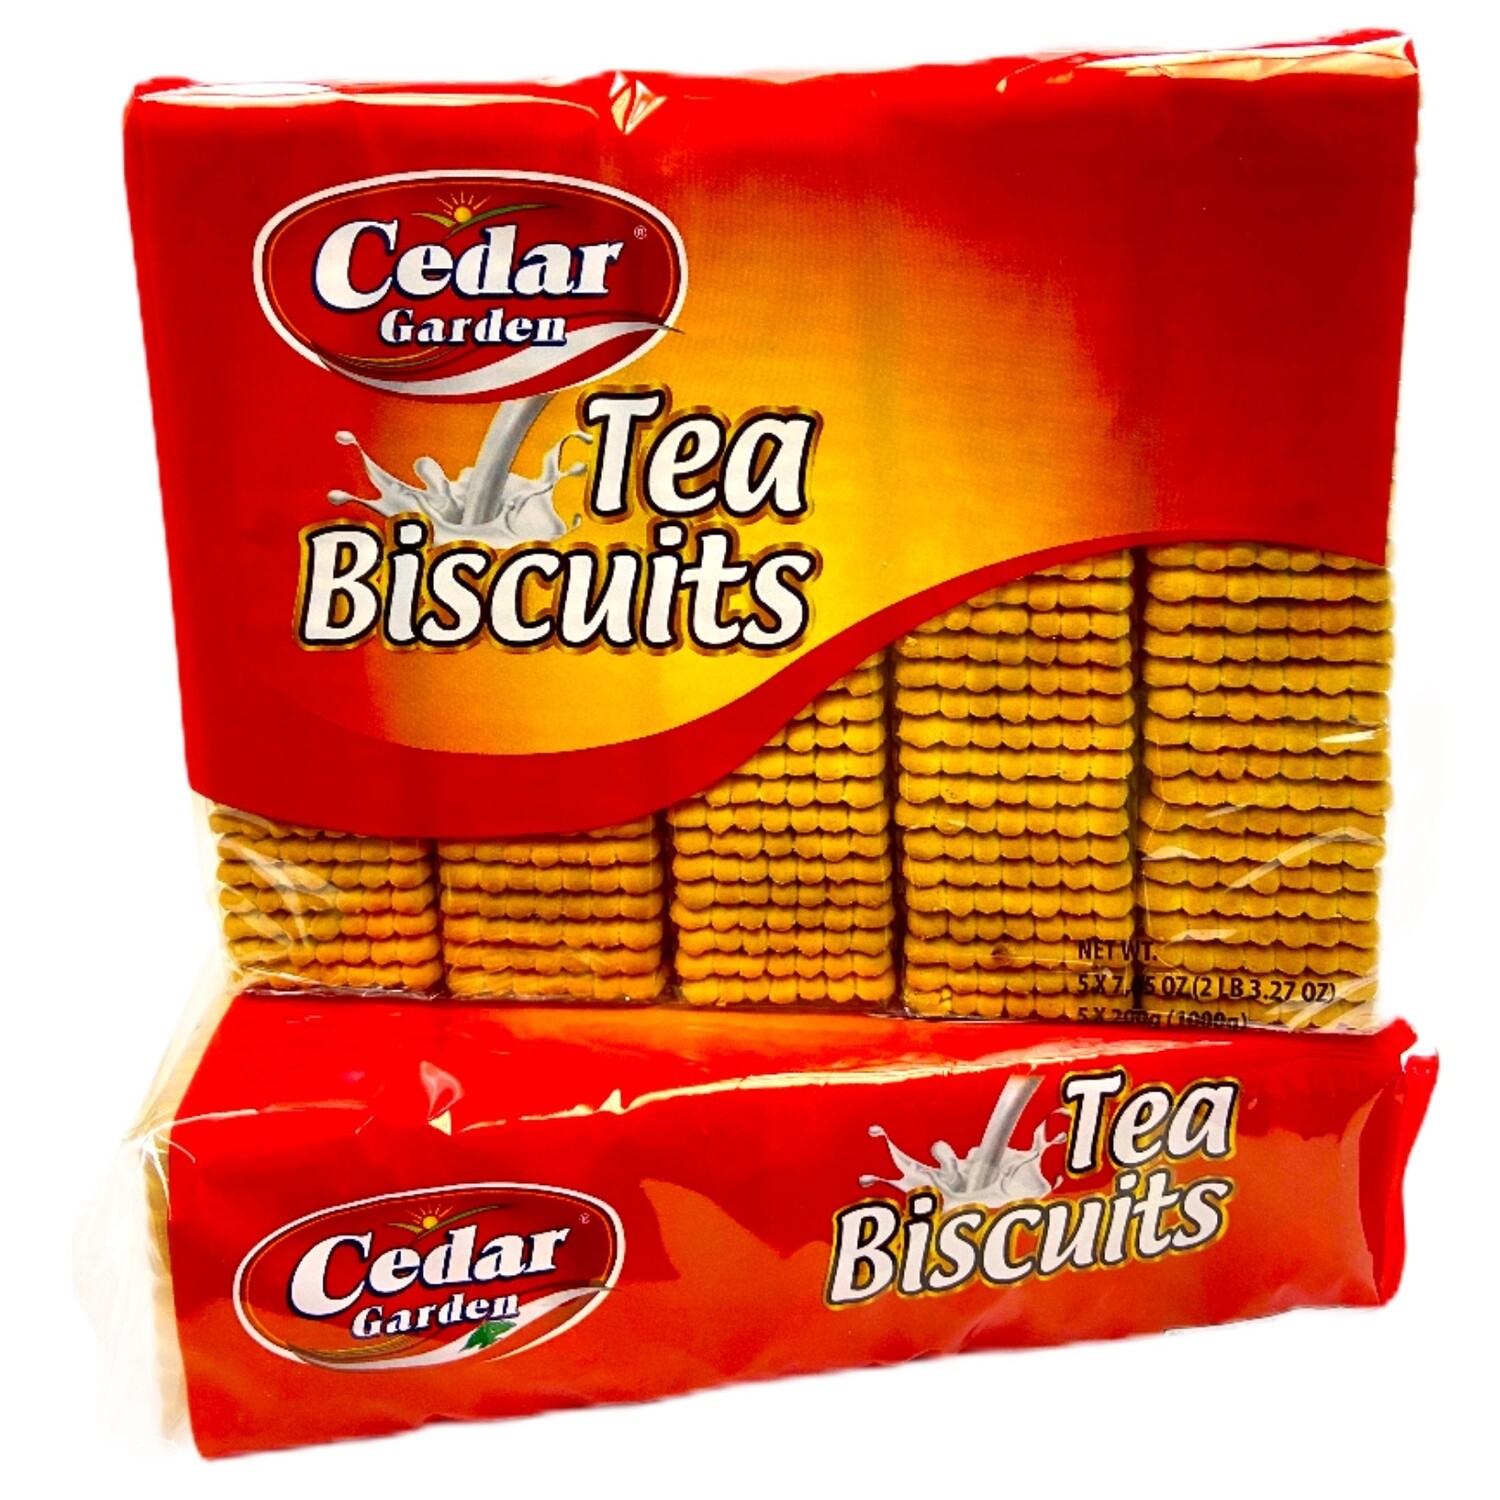 Cedar Garden Tea Biscuits 6x2lb